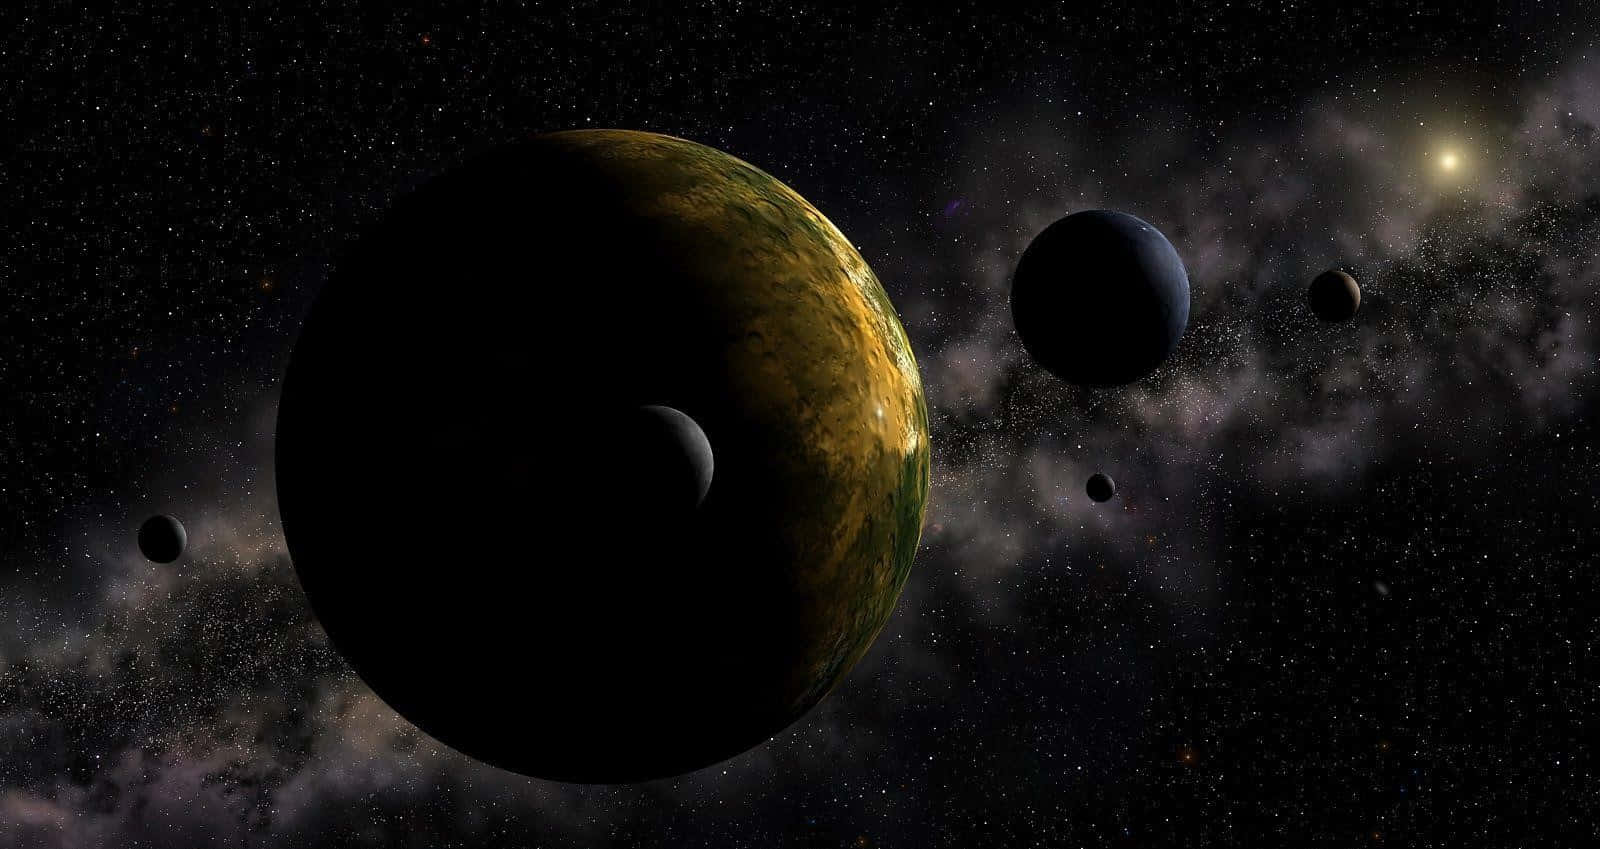 Elplaneta Enano Plutón Brilla Intensamente En El Espacio.